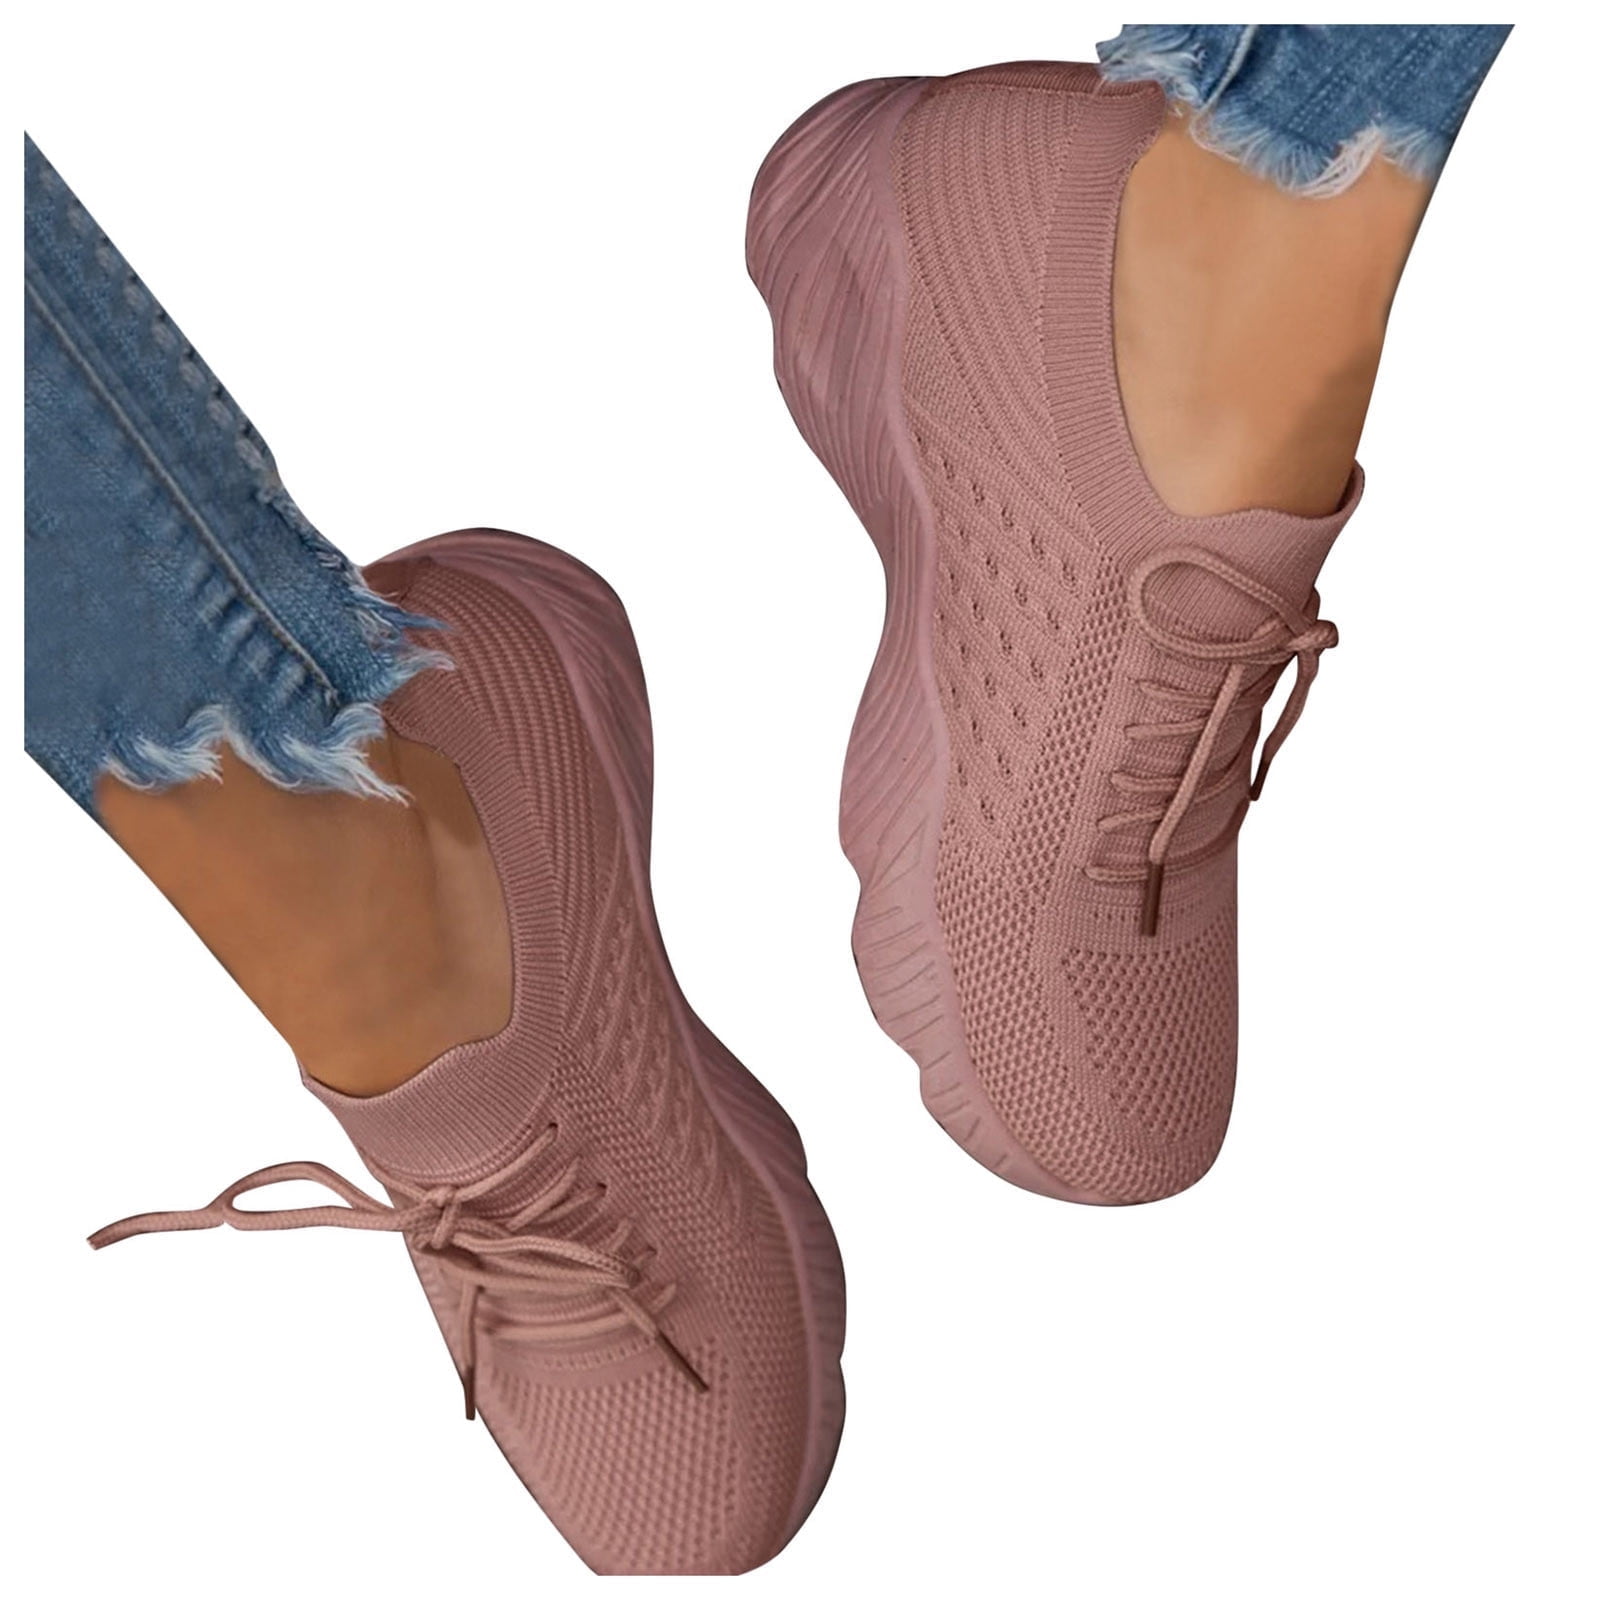 eczipvz Womens Shoes Women's Classic Lace Up Shoes Wingtip Flats Casual  Fall Walking Sneakers